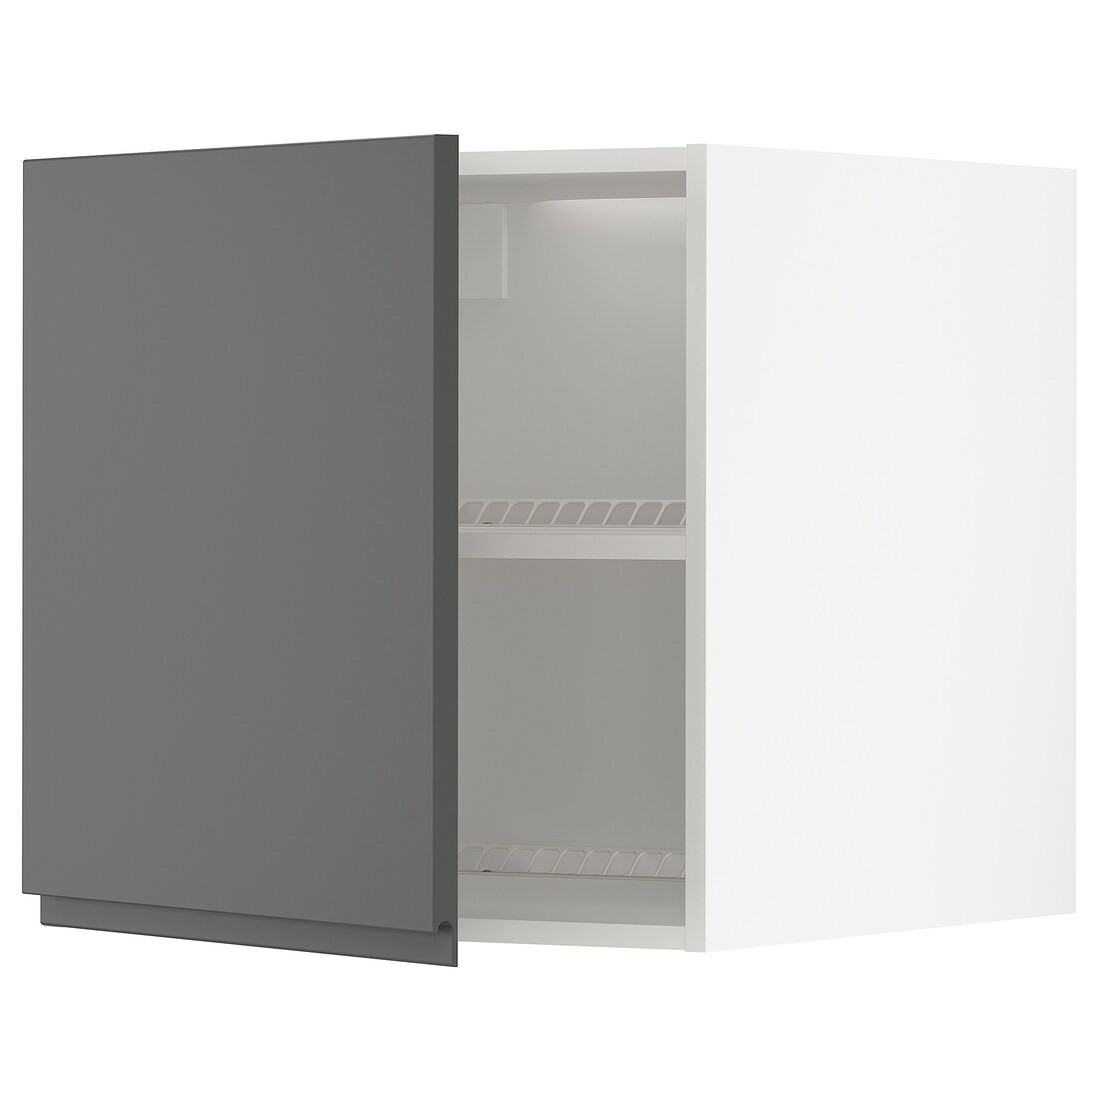 METOD МЕТОД Верхний шкаф для холодильника / морозильника, белый / Voxtorp темно-серый, 60x60 см